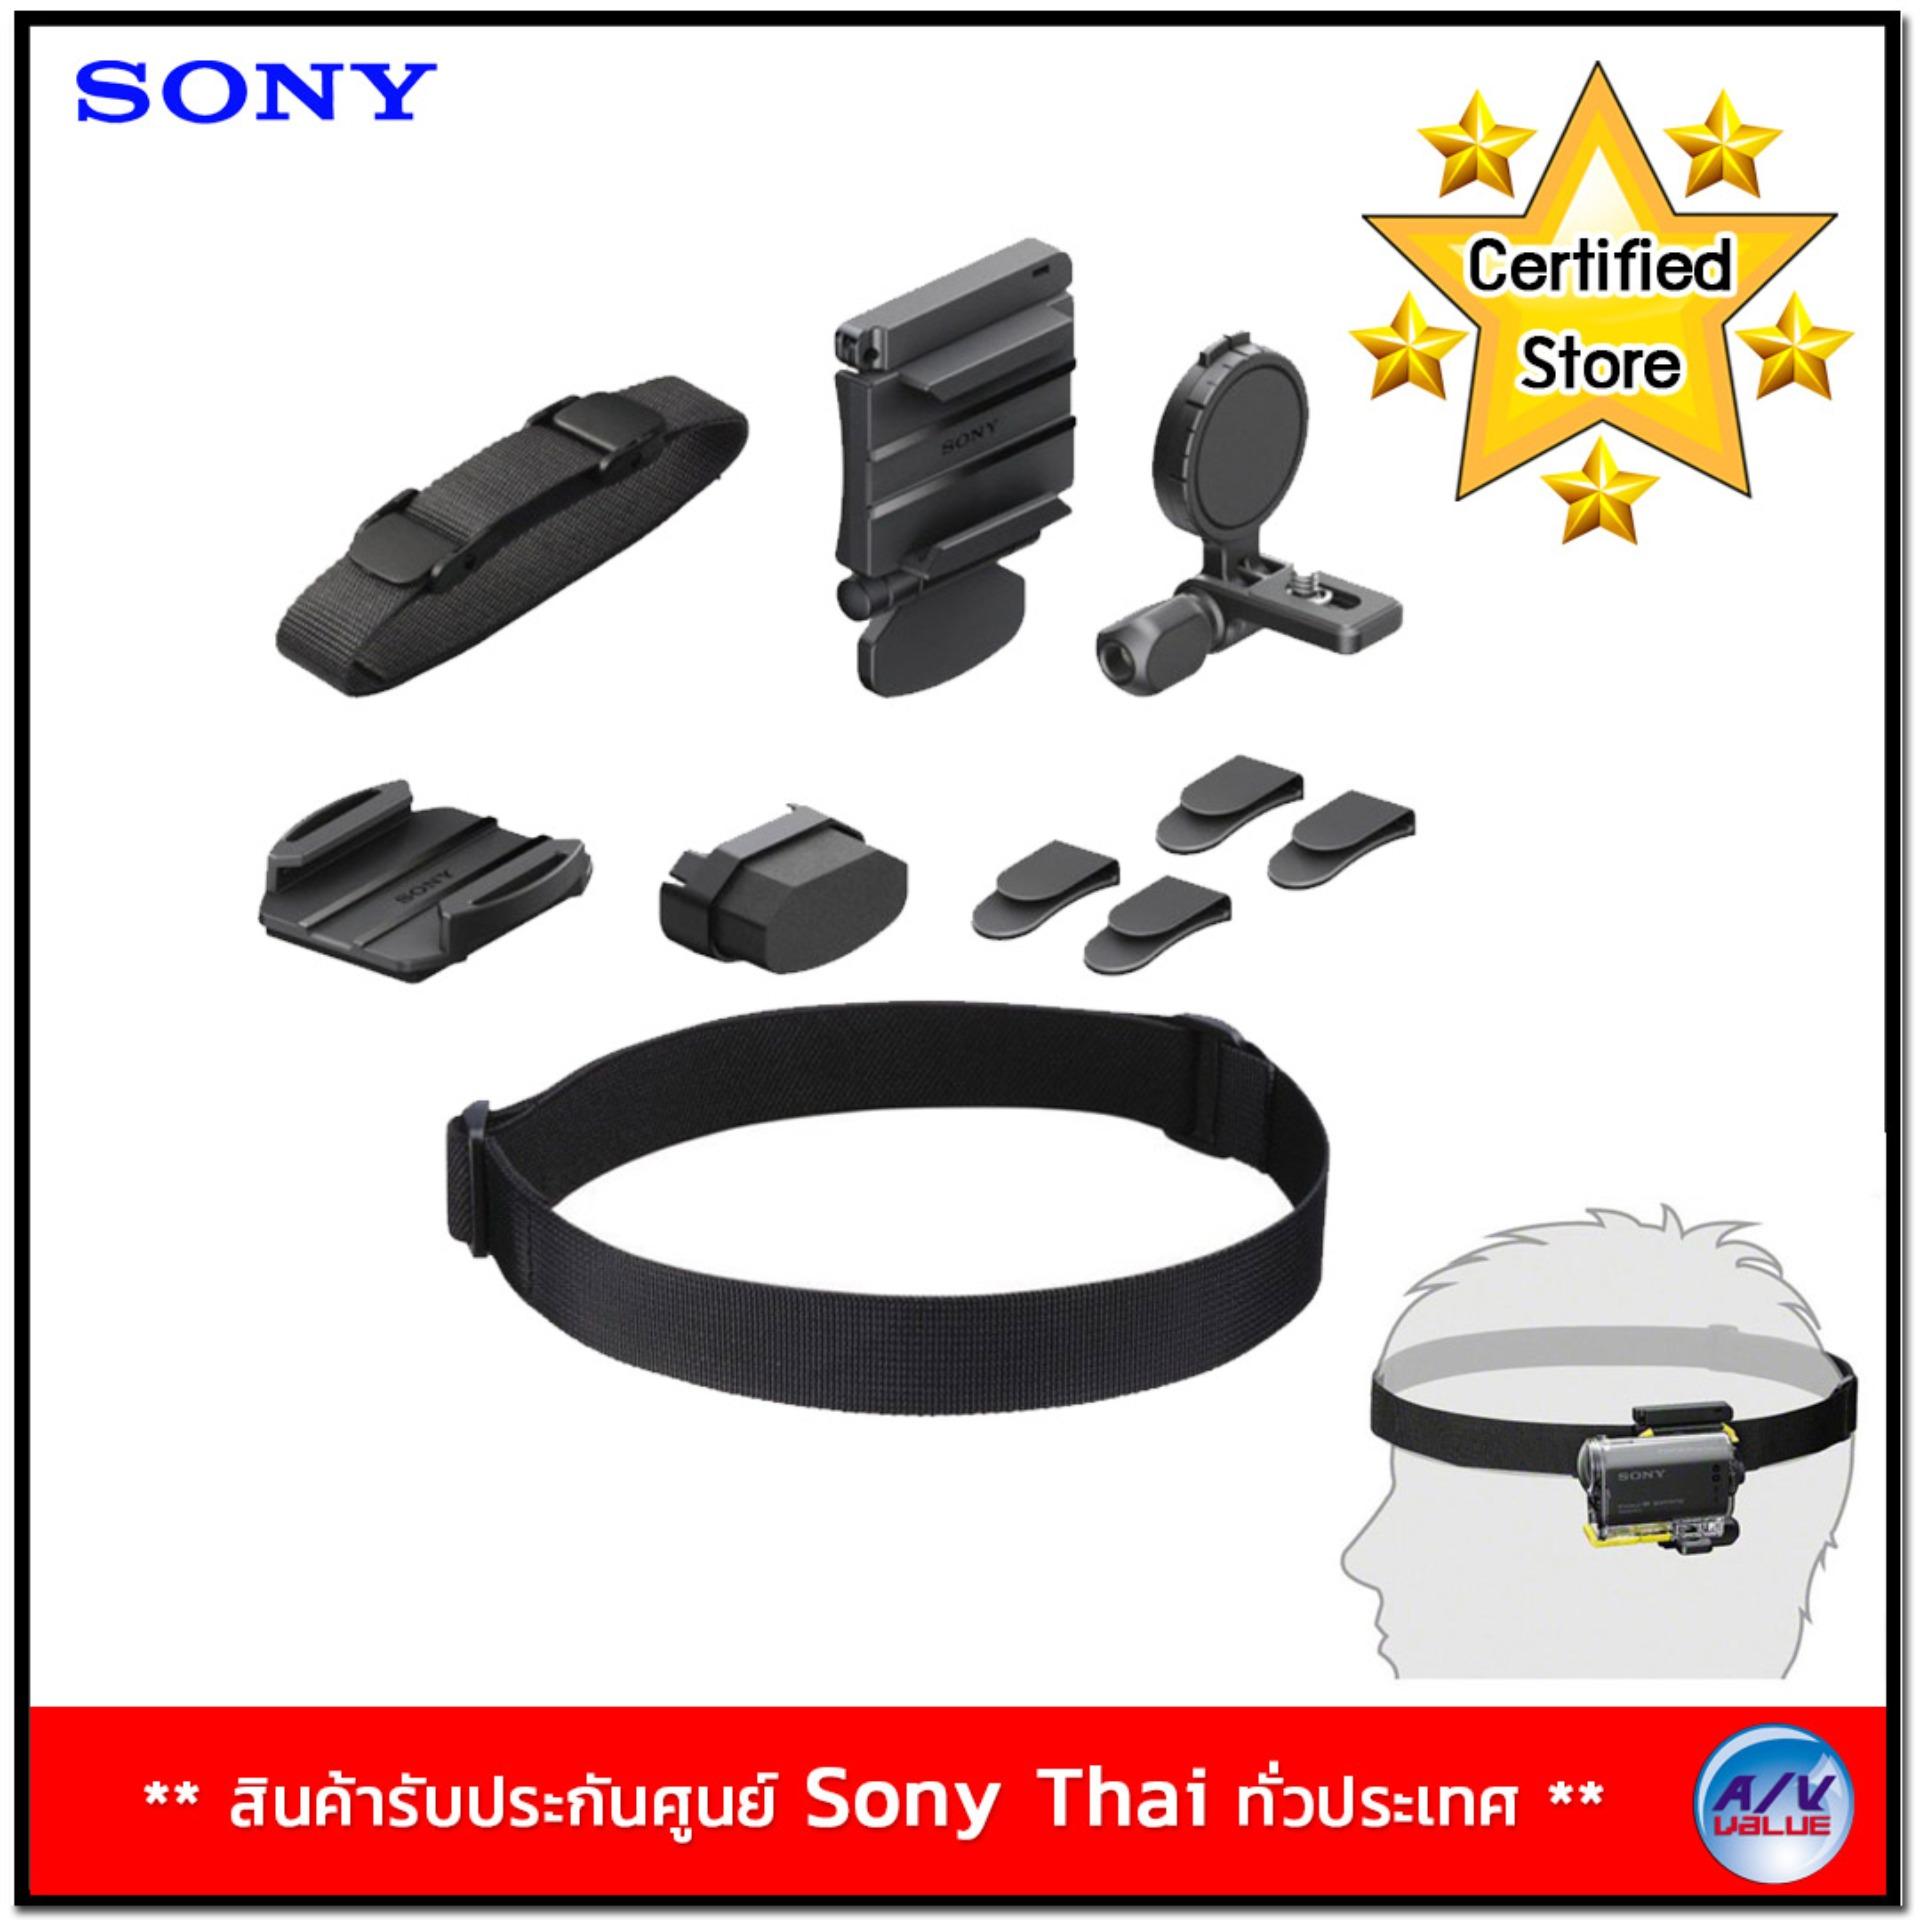 Sony Universal Head Mount kit BLT-UHM1 (Black)